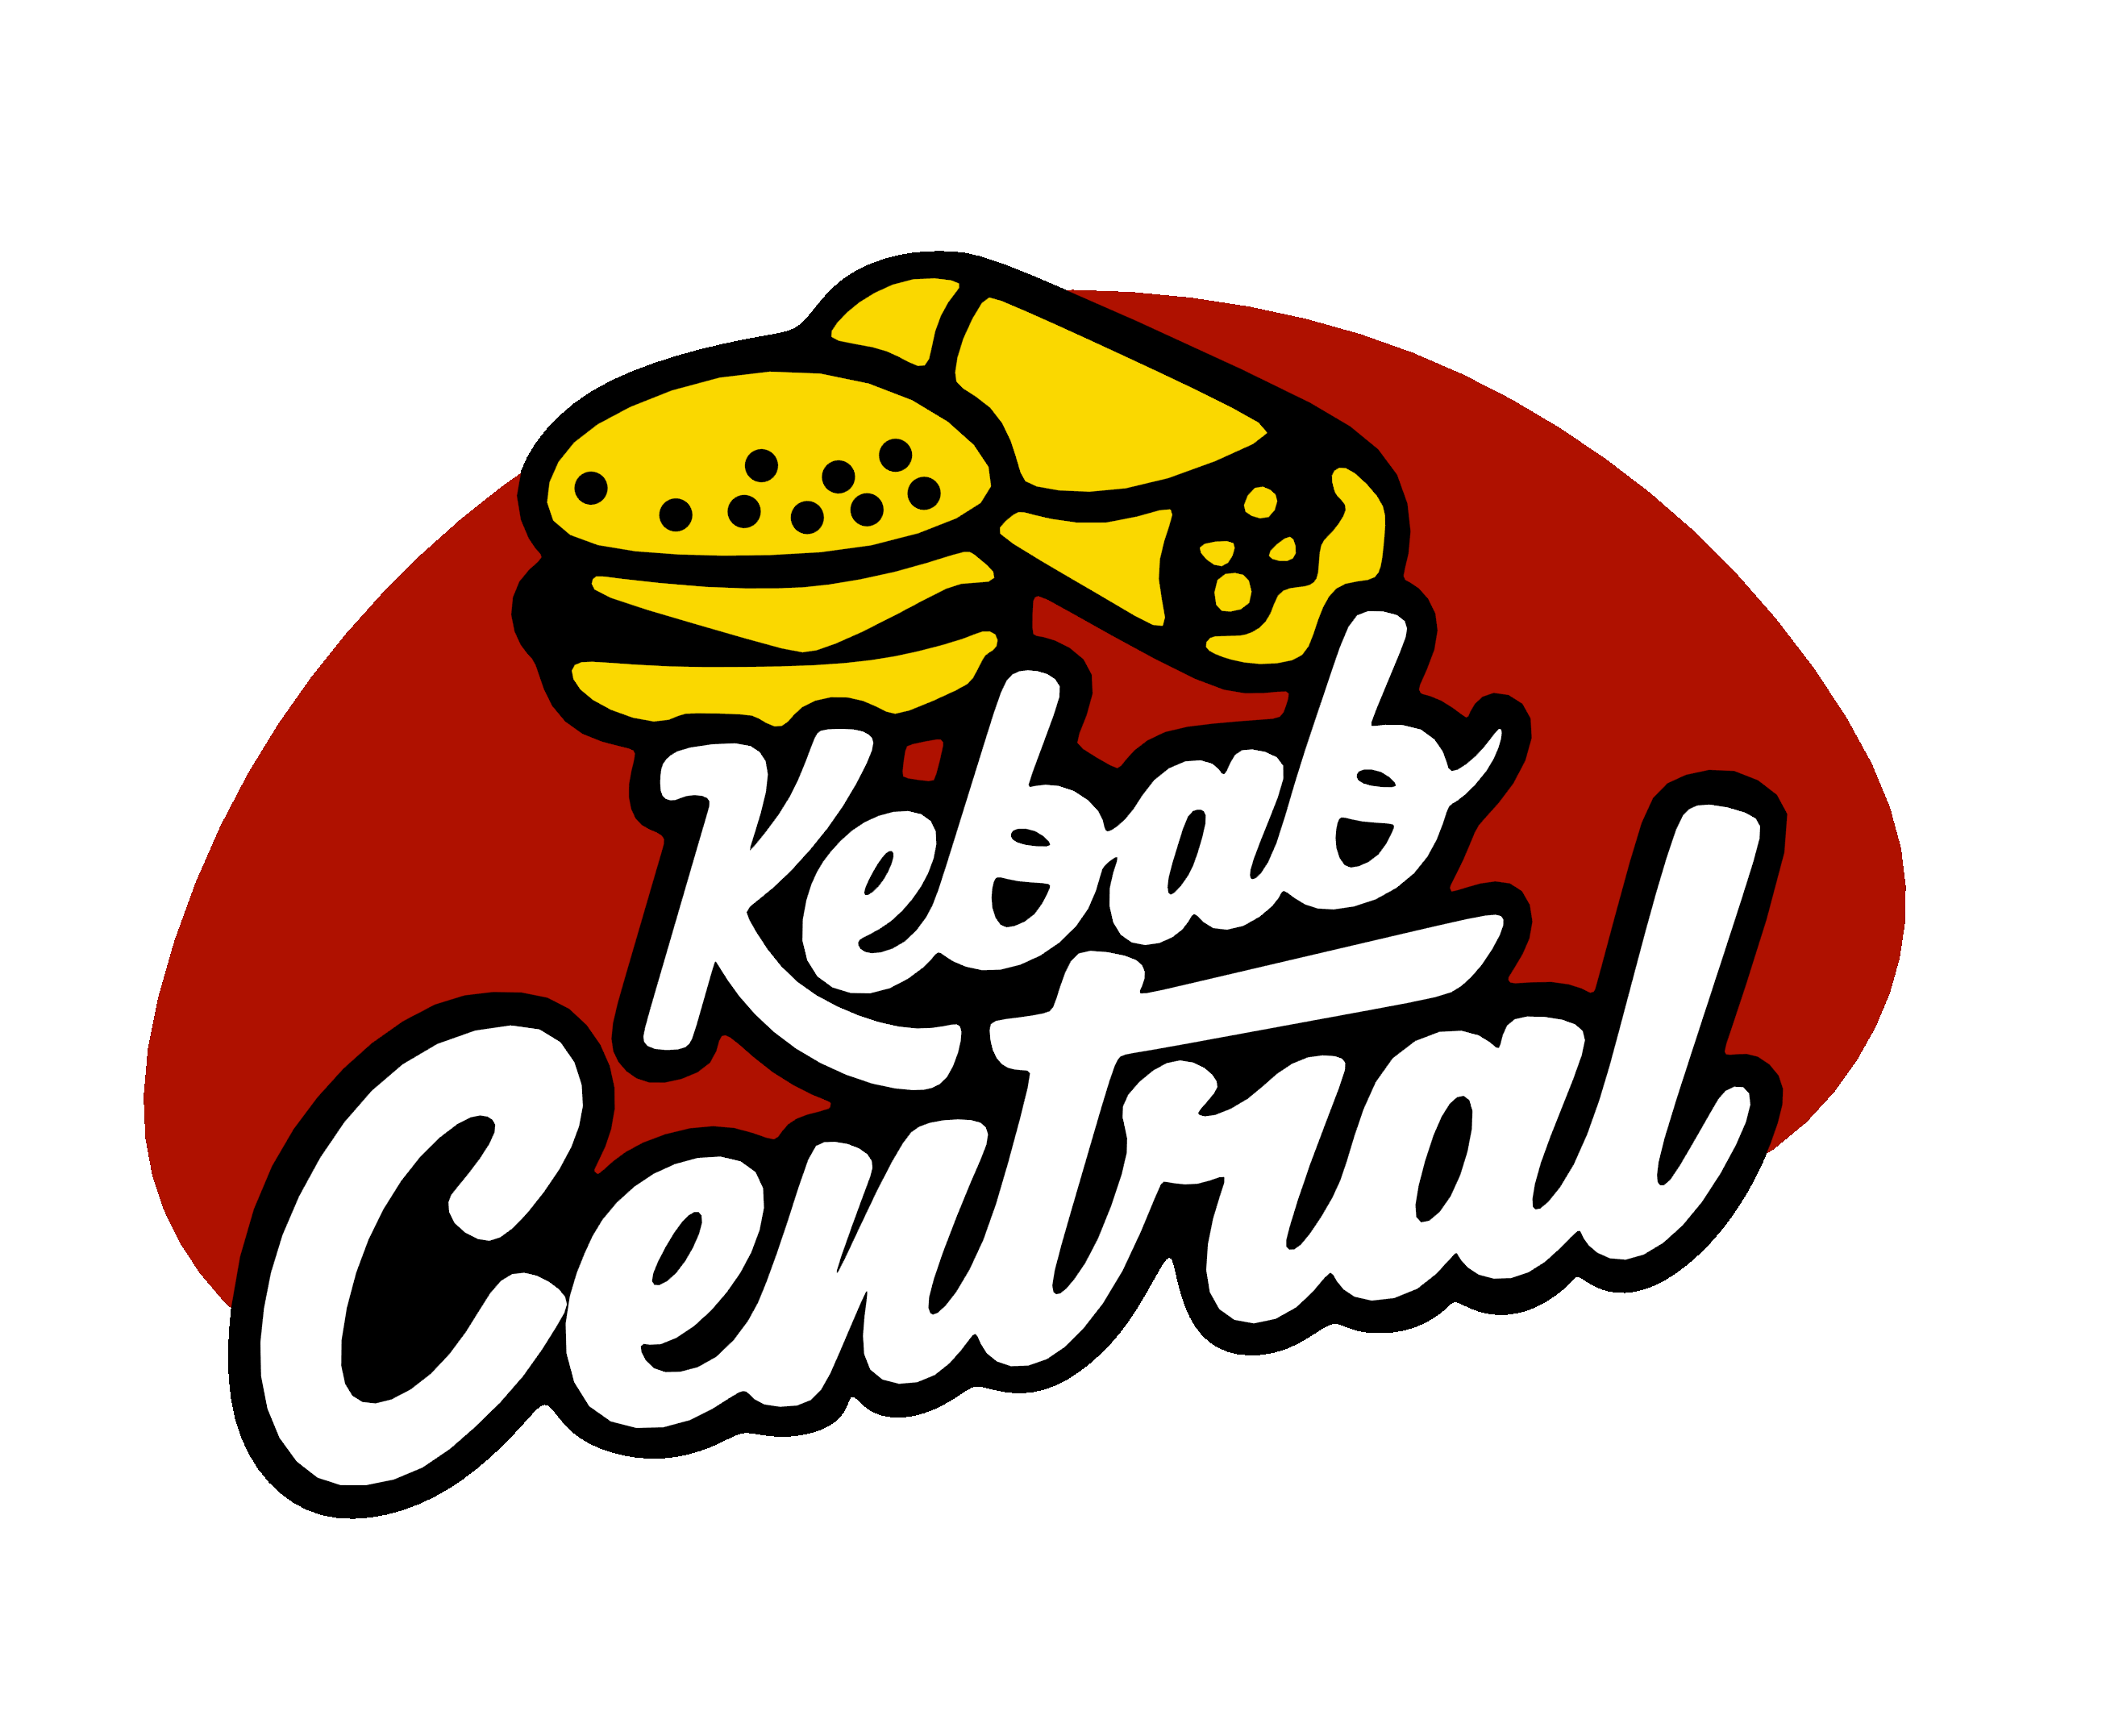 Kebab Central